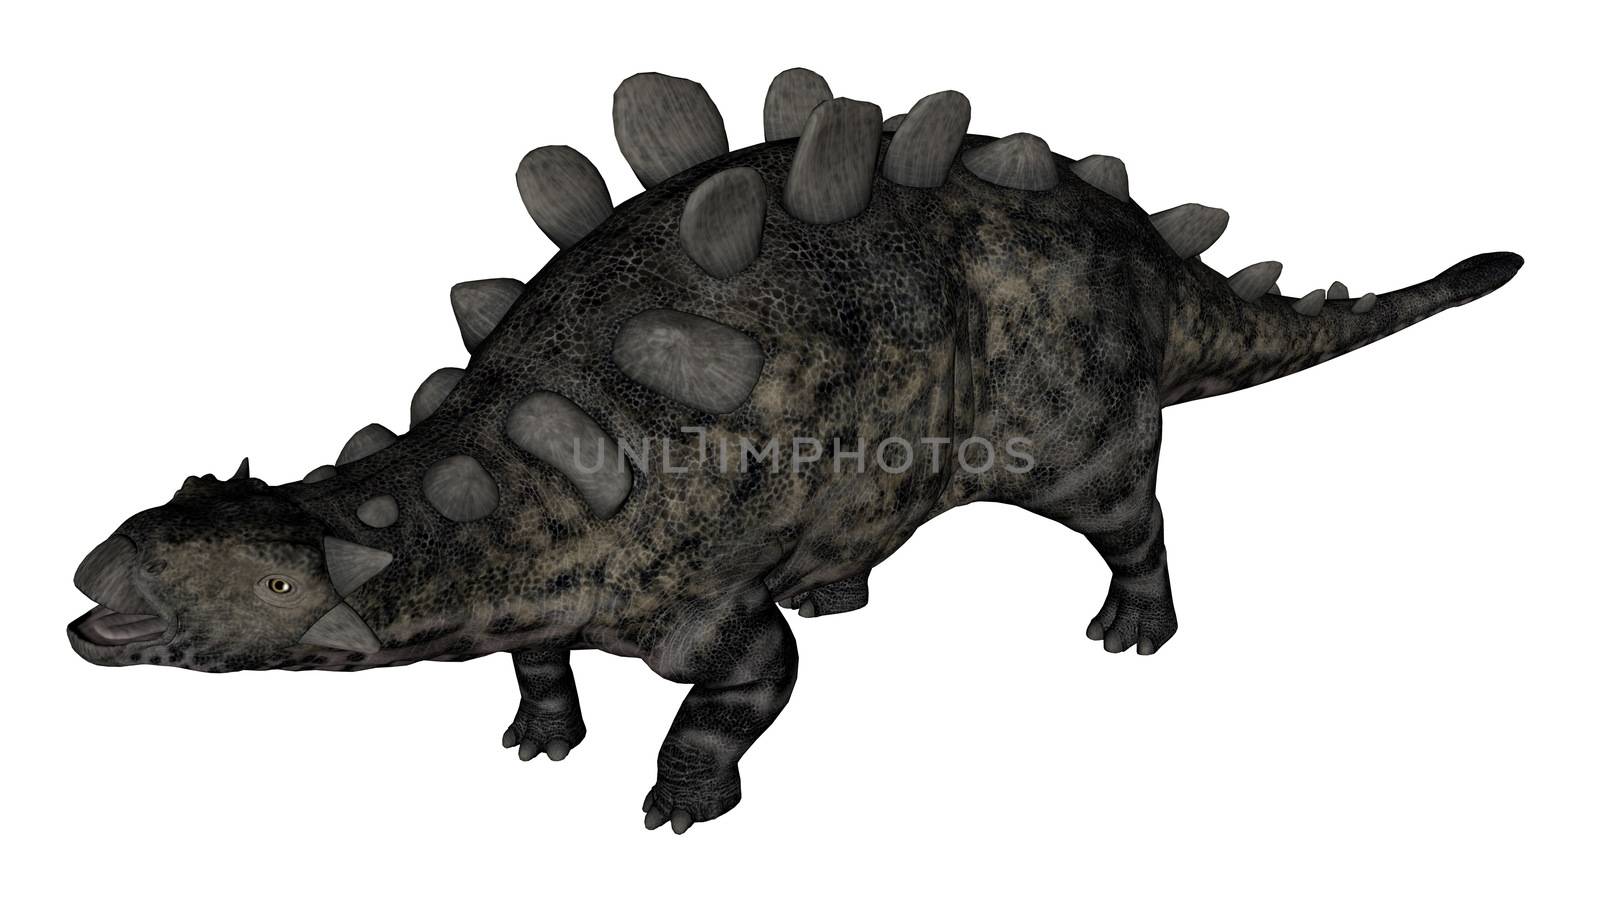 Chrichtonsaurus dinosaur standing - 3D render by Elenaphotos21